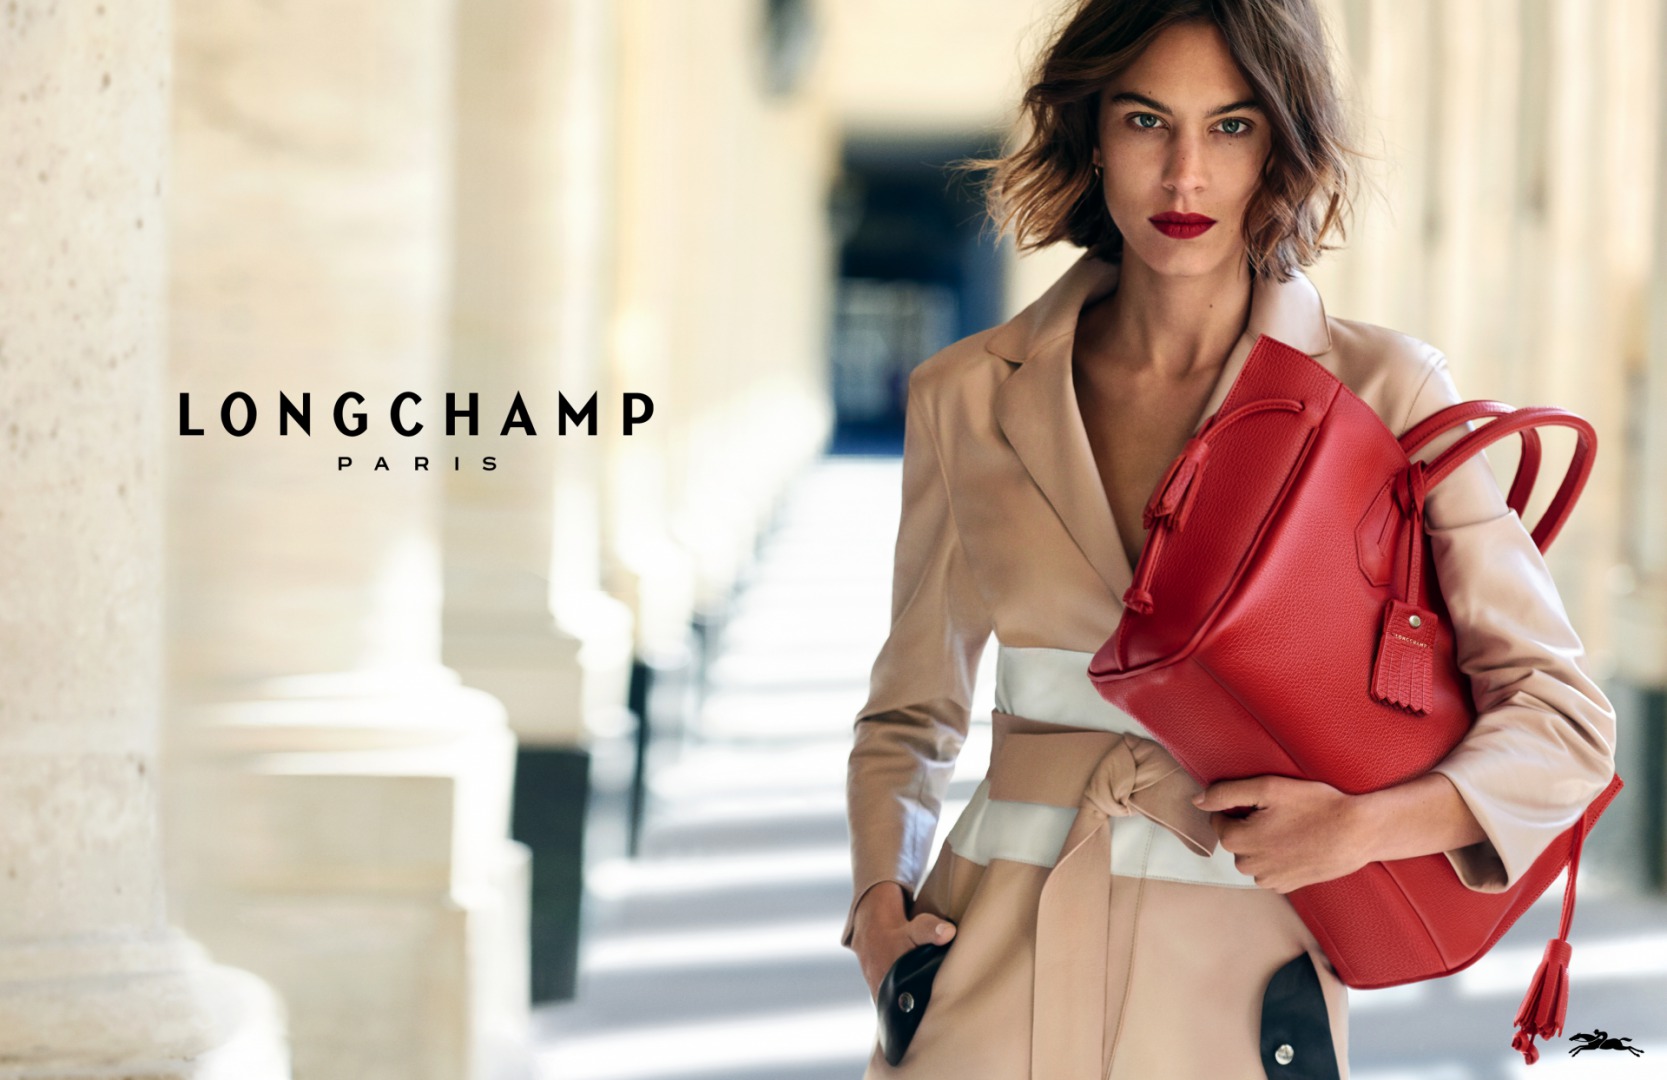 Longchamp Alexa Chung